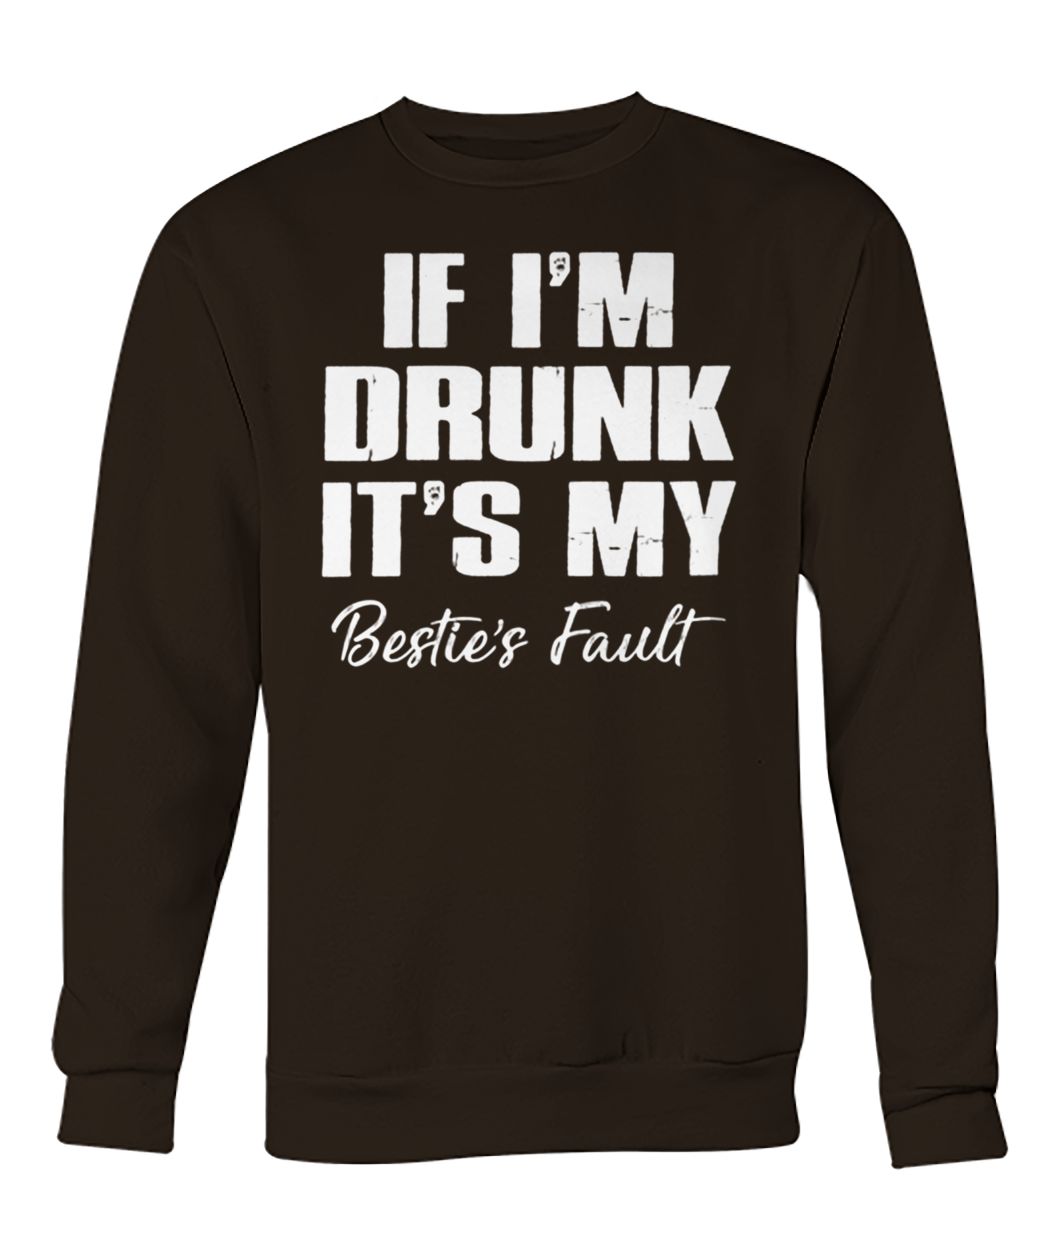 If I'm drunk it's my bestie's fault crew neck sweatshirt